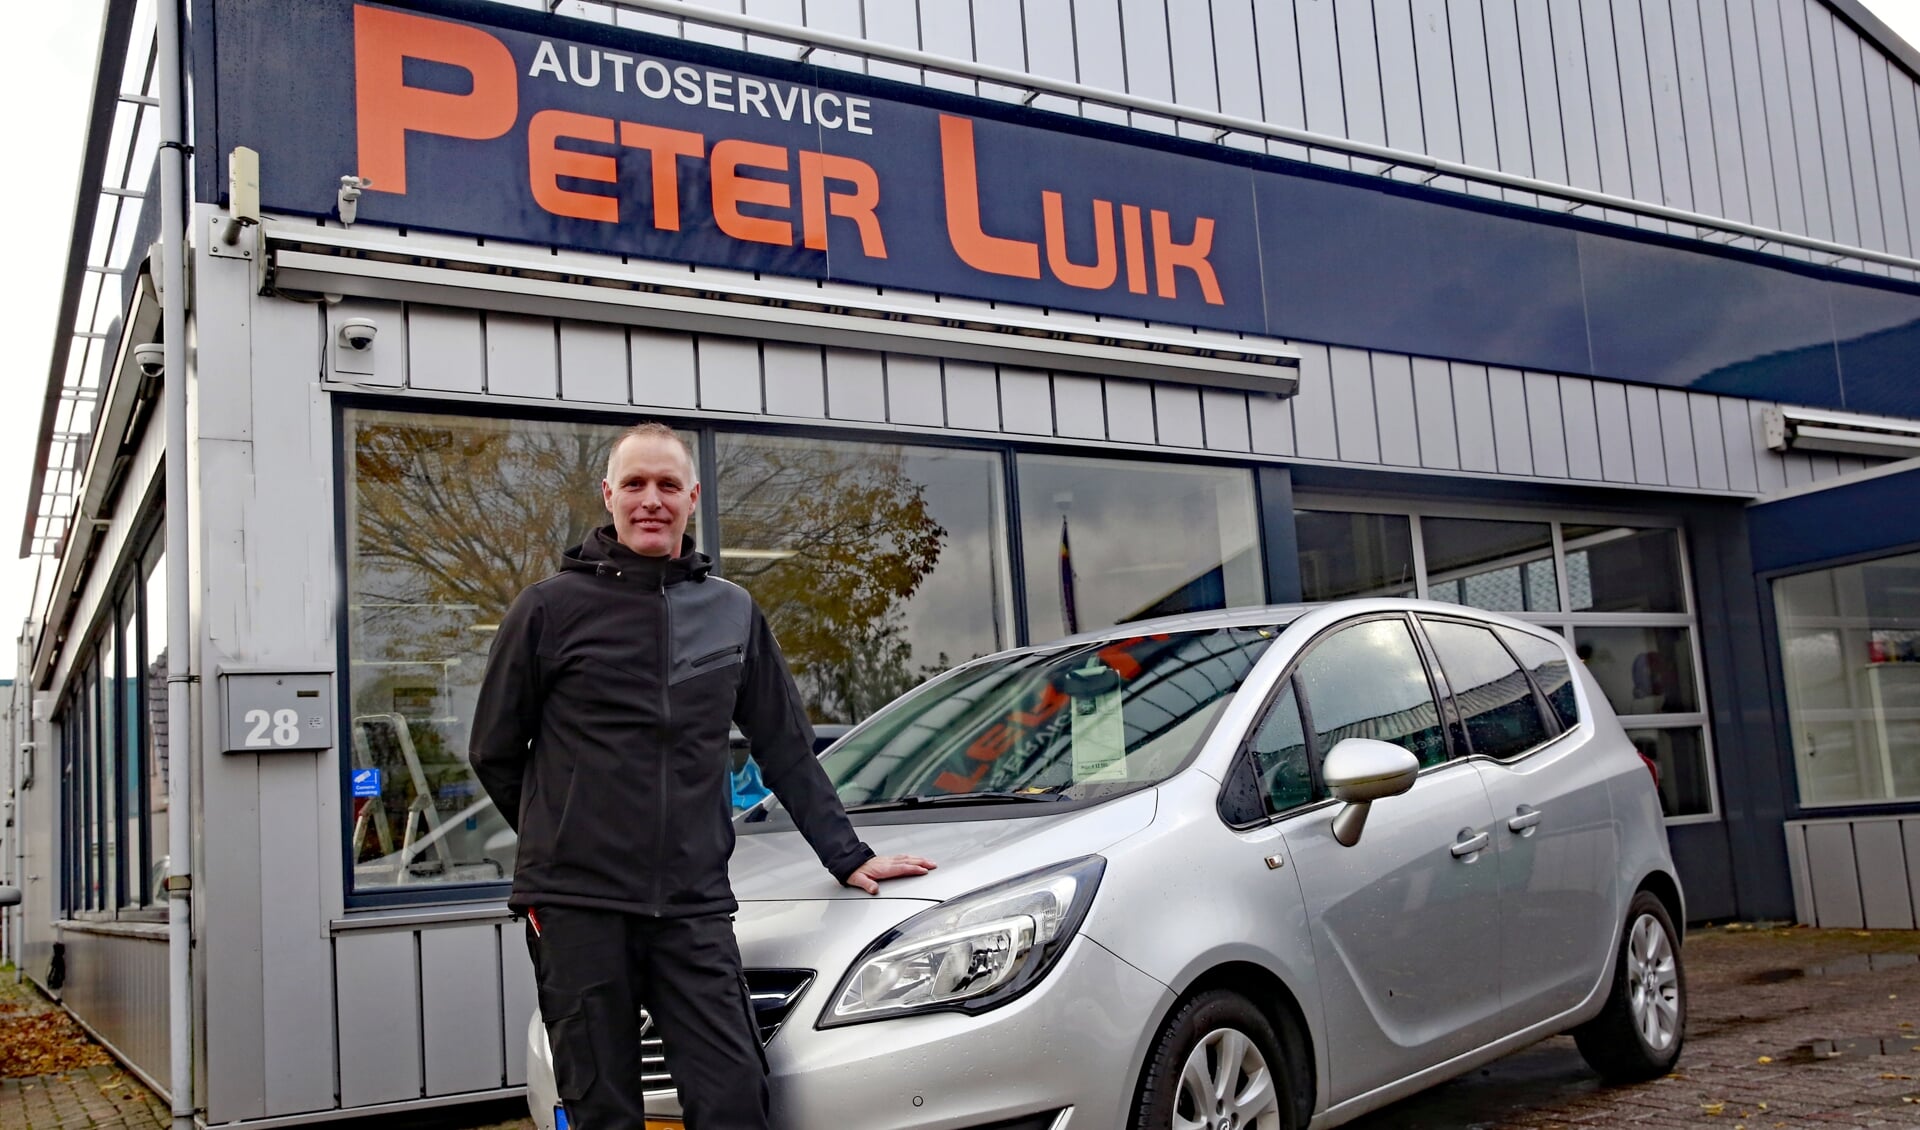 Peter Luik van Autoservice Peter Luik is voortaan gevestigd in 't Zand.